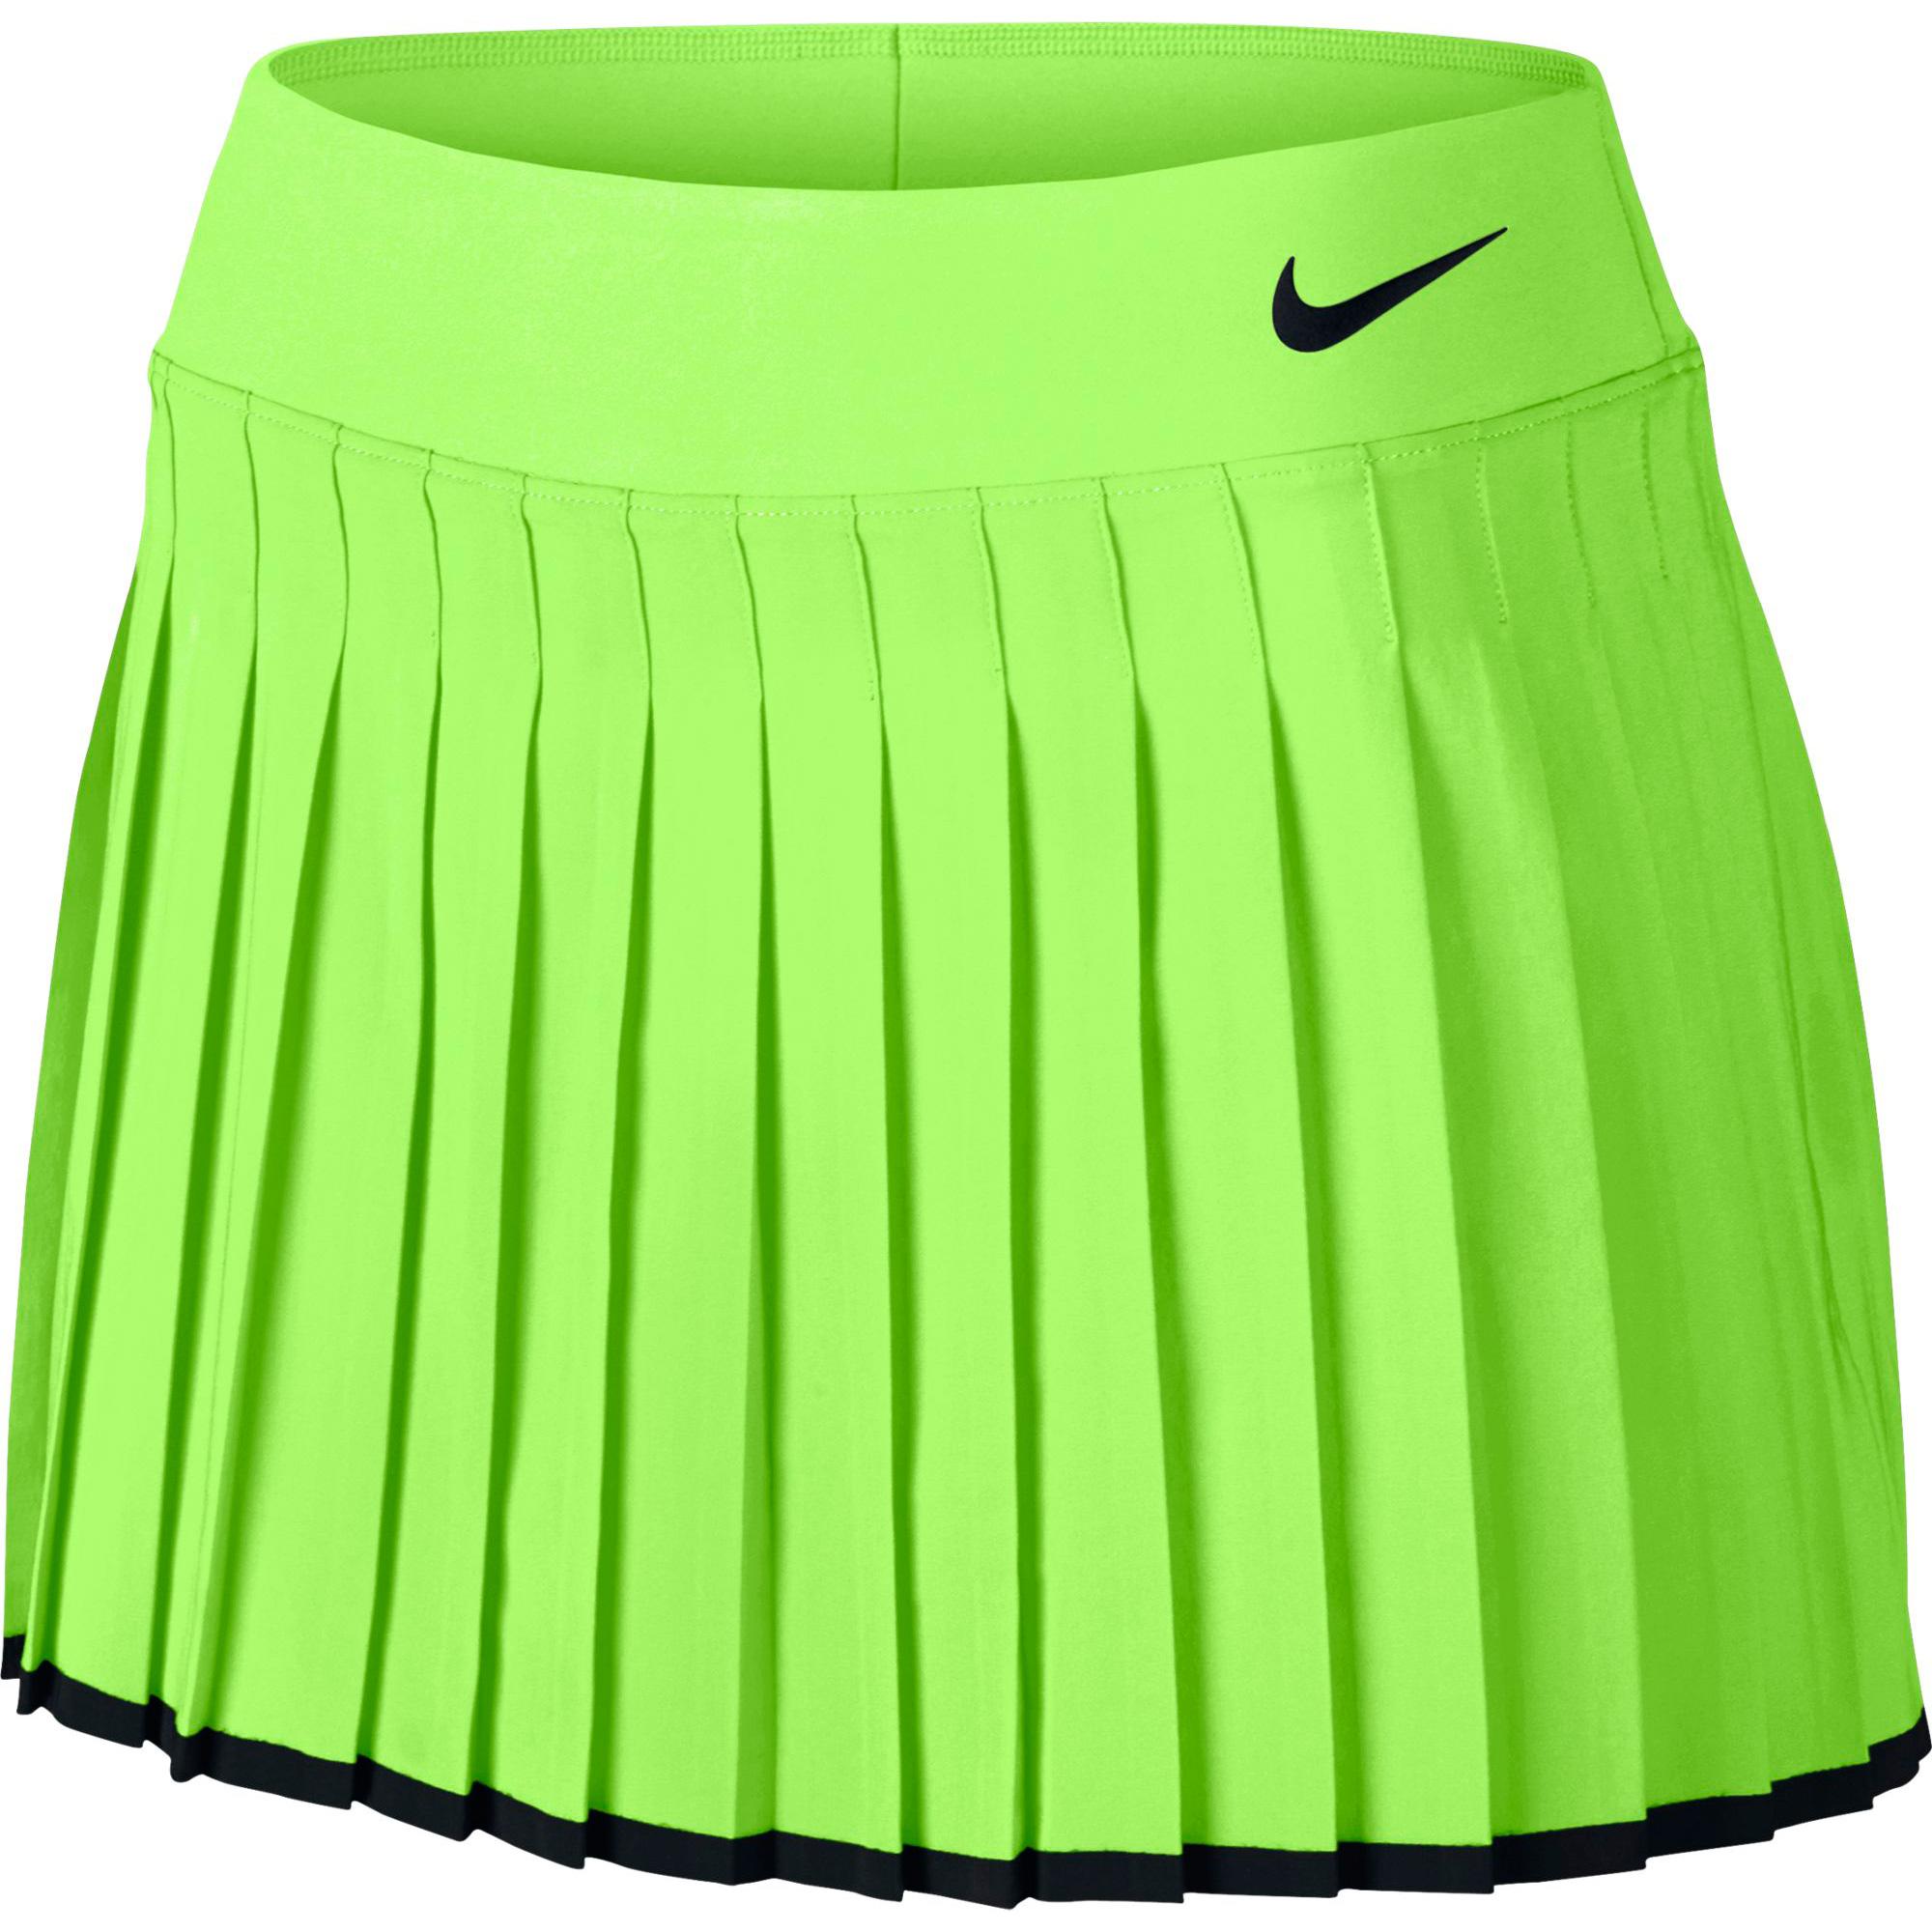 Вайлдберриз интернет магазин юбки. Юбка для тенниса Nike. Теннисная юбка найк. Теннисная юбка адидас. Nike теннисная юбка 2020.